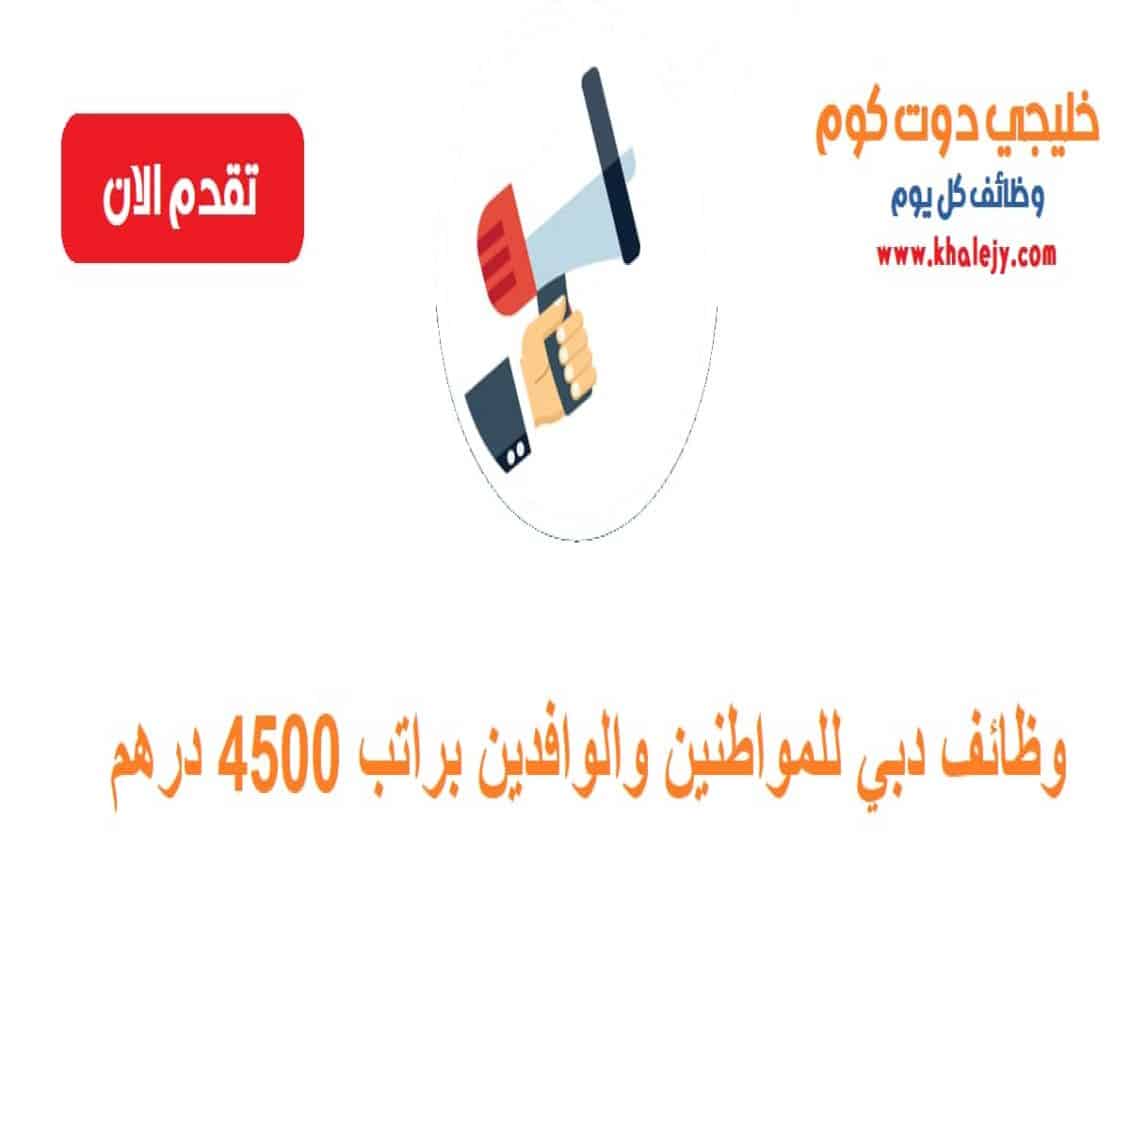 وظائف دبي للمواطنين والوافدين براتب 4500 درهم